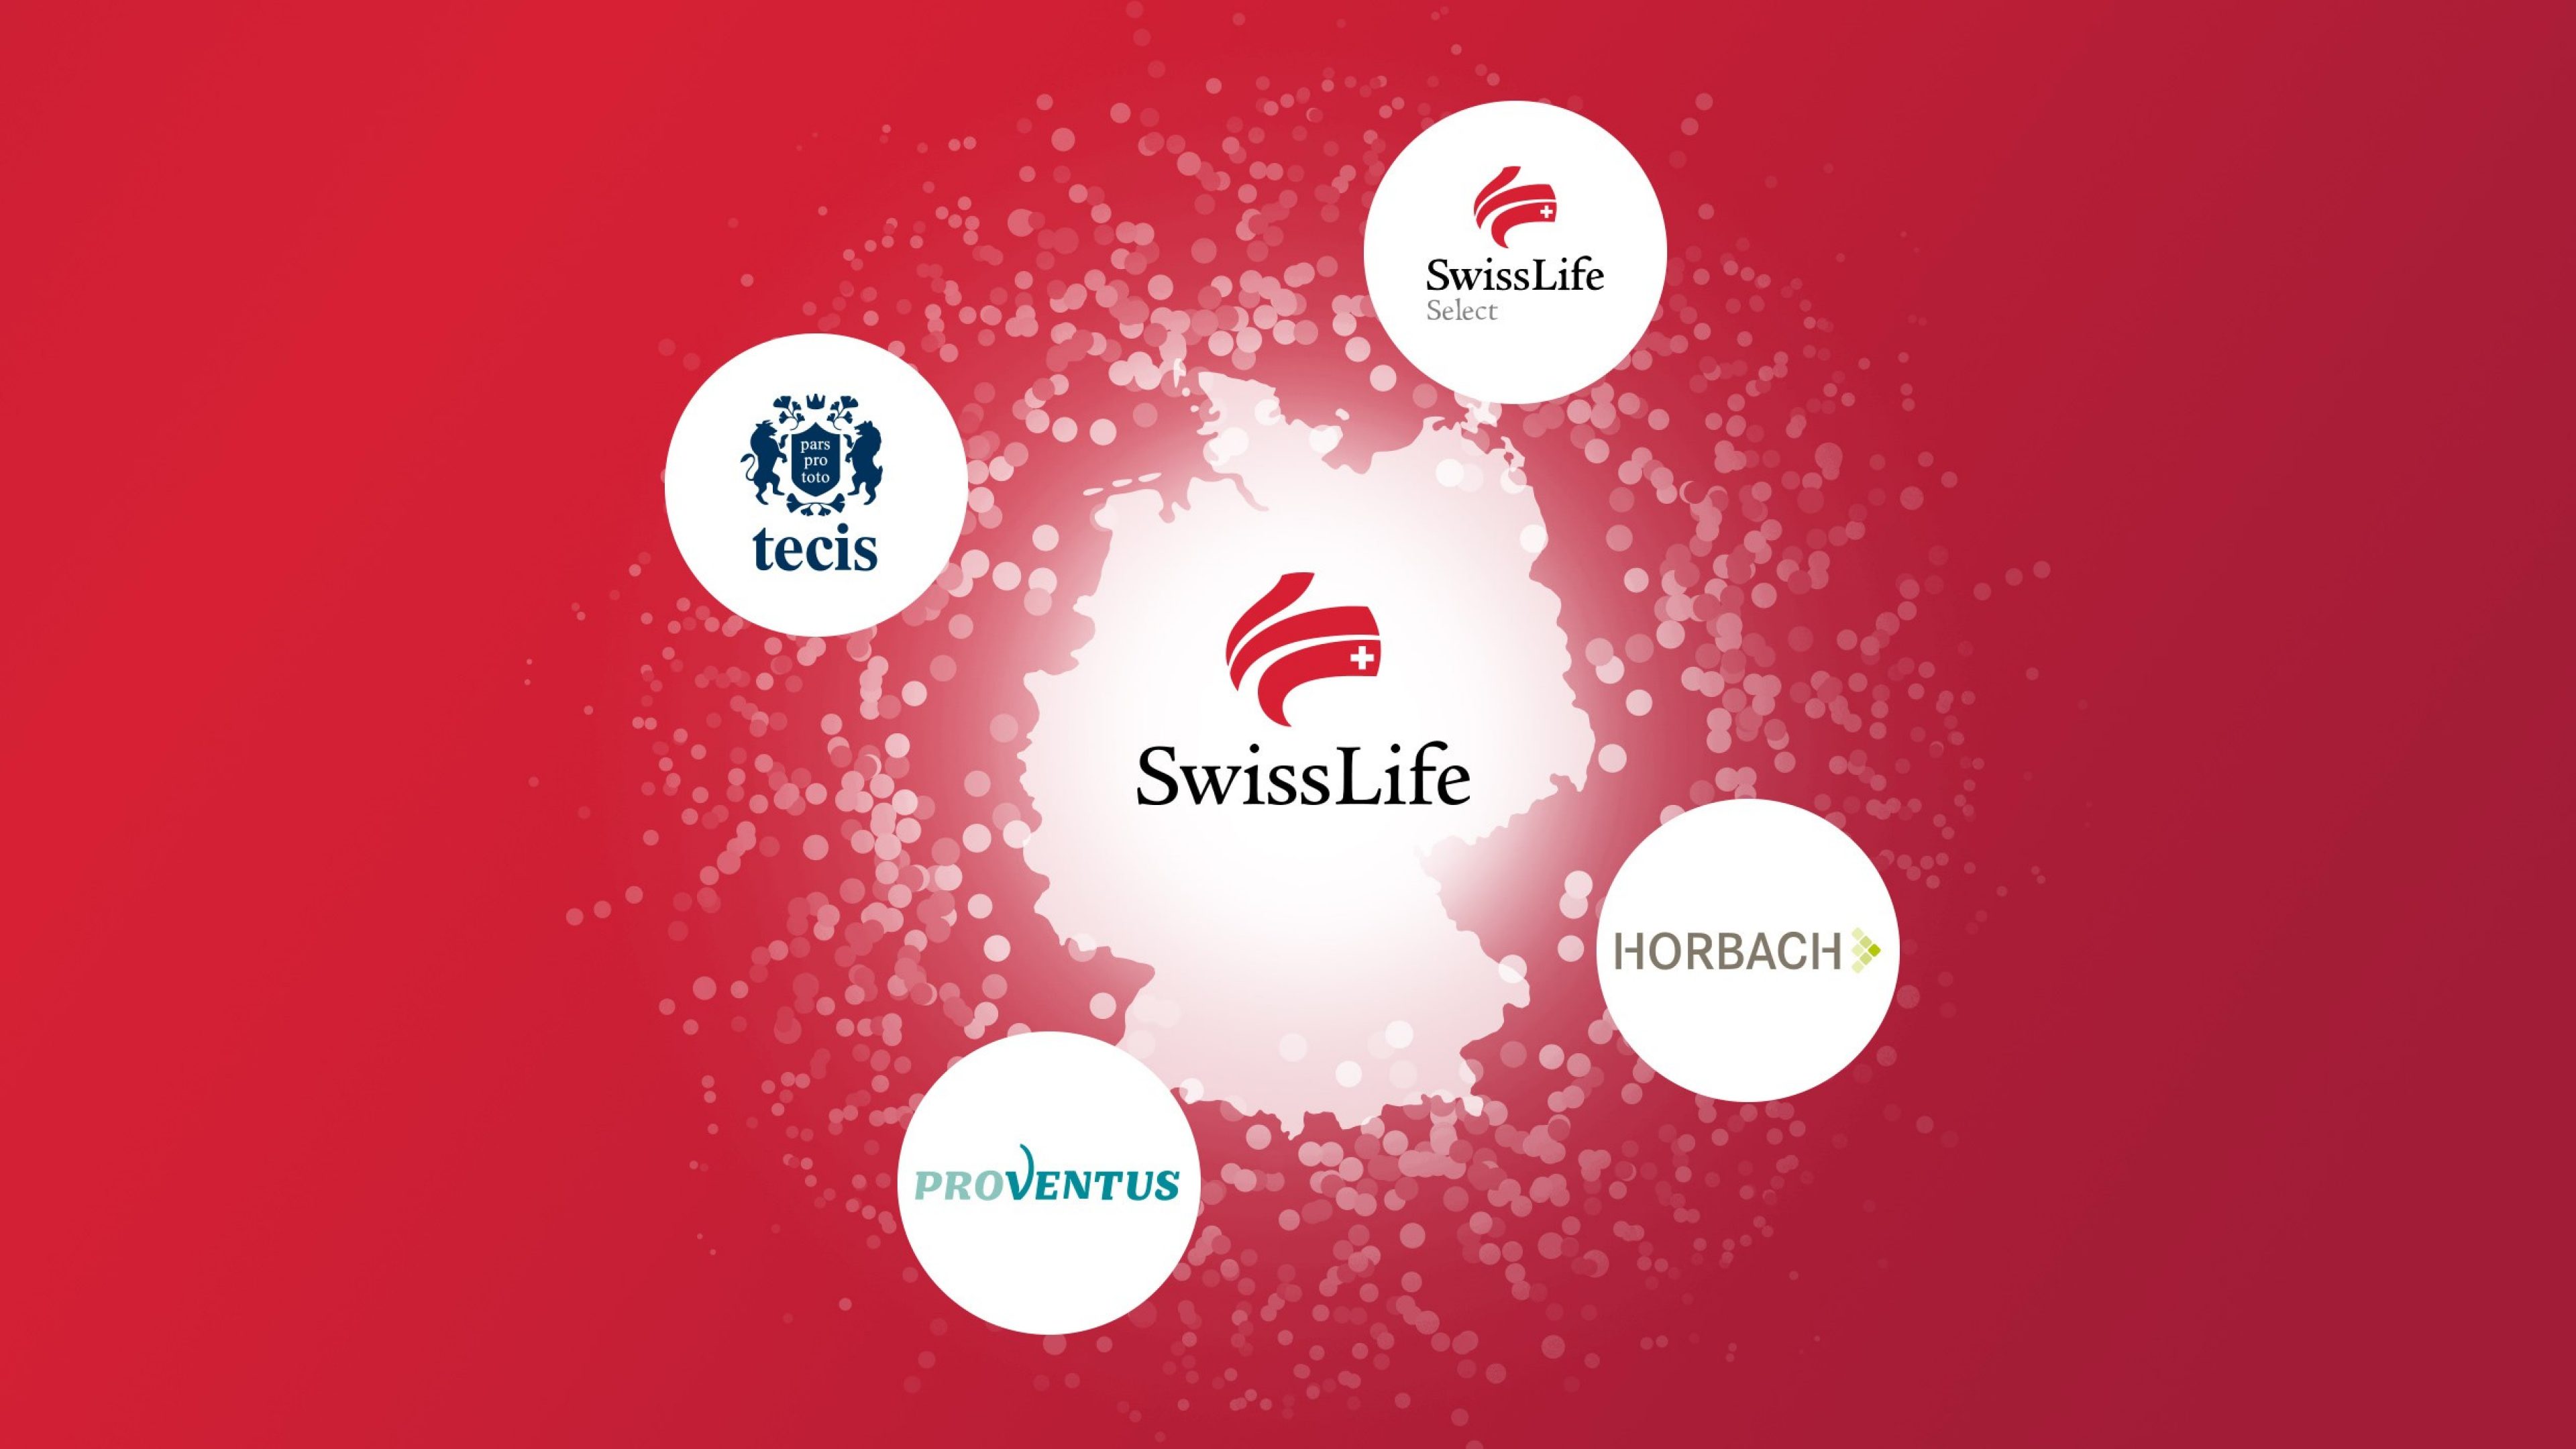 Swiss Life ist ein führender Anbieter von Finanz- und Vorsorgelösungen und tritt mit mehreren Marken auf dem deutschen Markt auf. Die Marken Swiss Life Select, tecis, HORBACH und Proventus stehen für eine ganzheitliche und persönliche Finanzberatung mit individuellen Lösungen nach dem Best-Select-Prinzip.